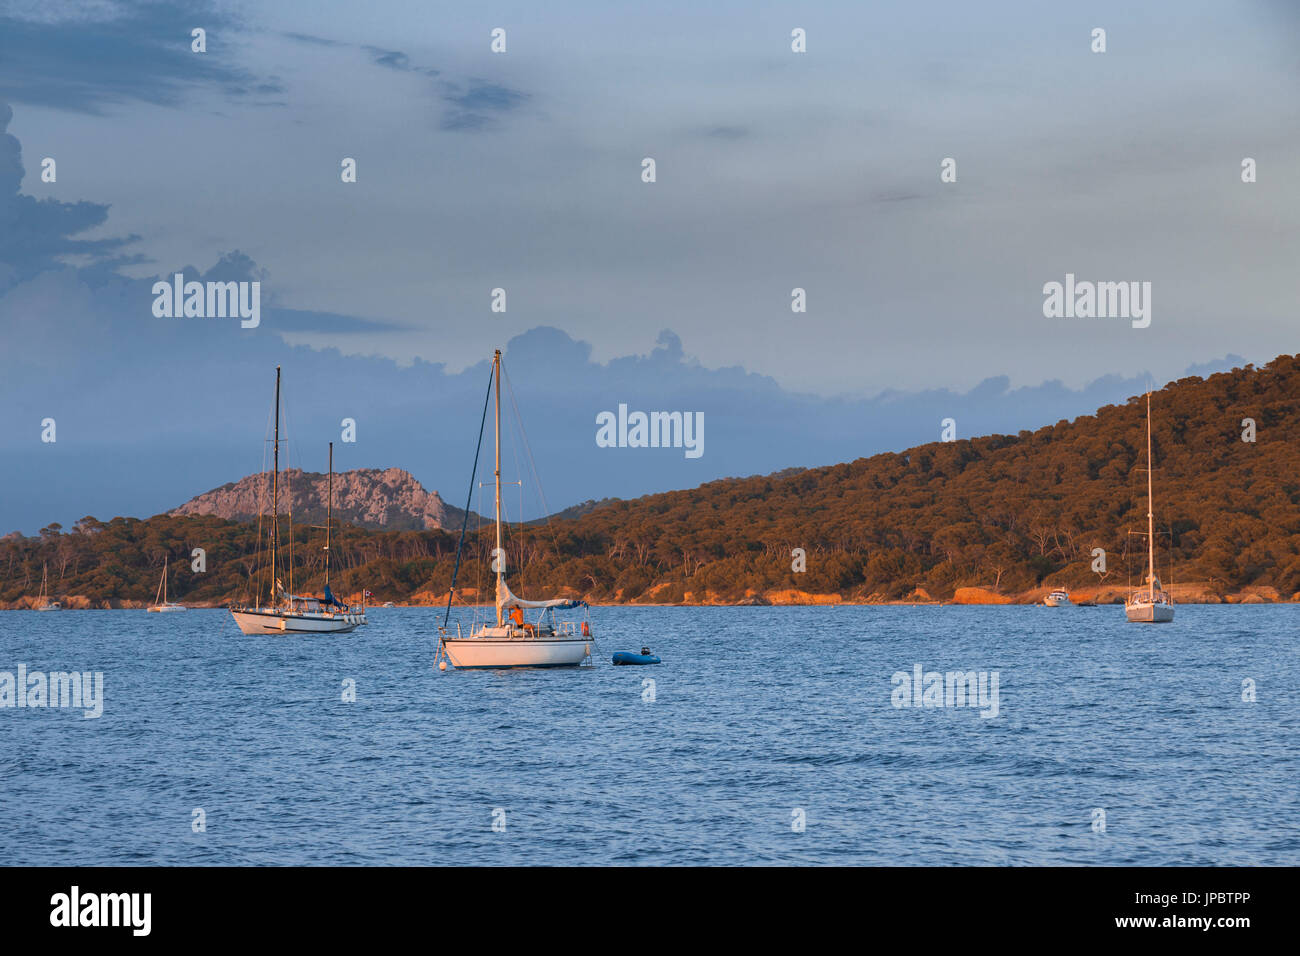 Ormeggio barche a vela durante il tramonto (Ile de Porquerolles, Hyeres, Tolone, Var reparto, Provence-Alpes-Côte d'Azur regione, Francia, Europa) Foto Stock